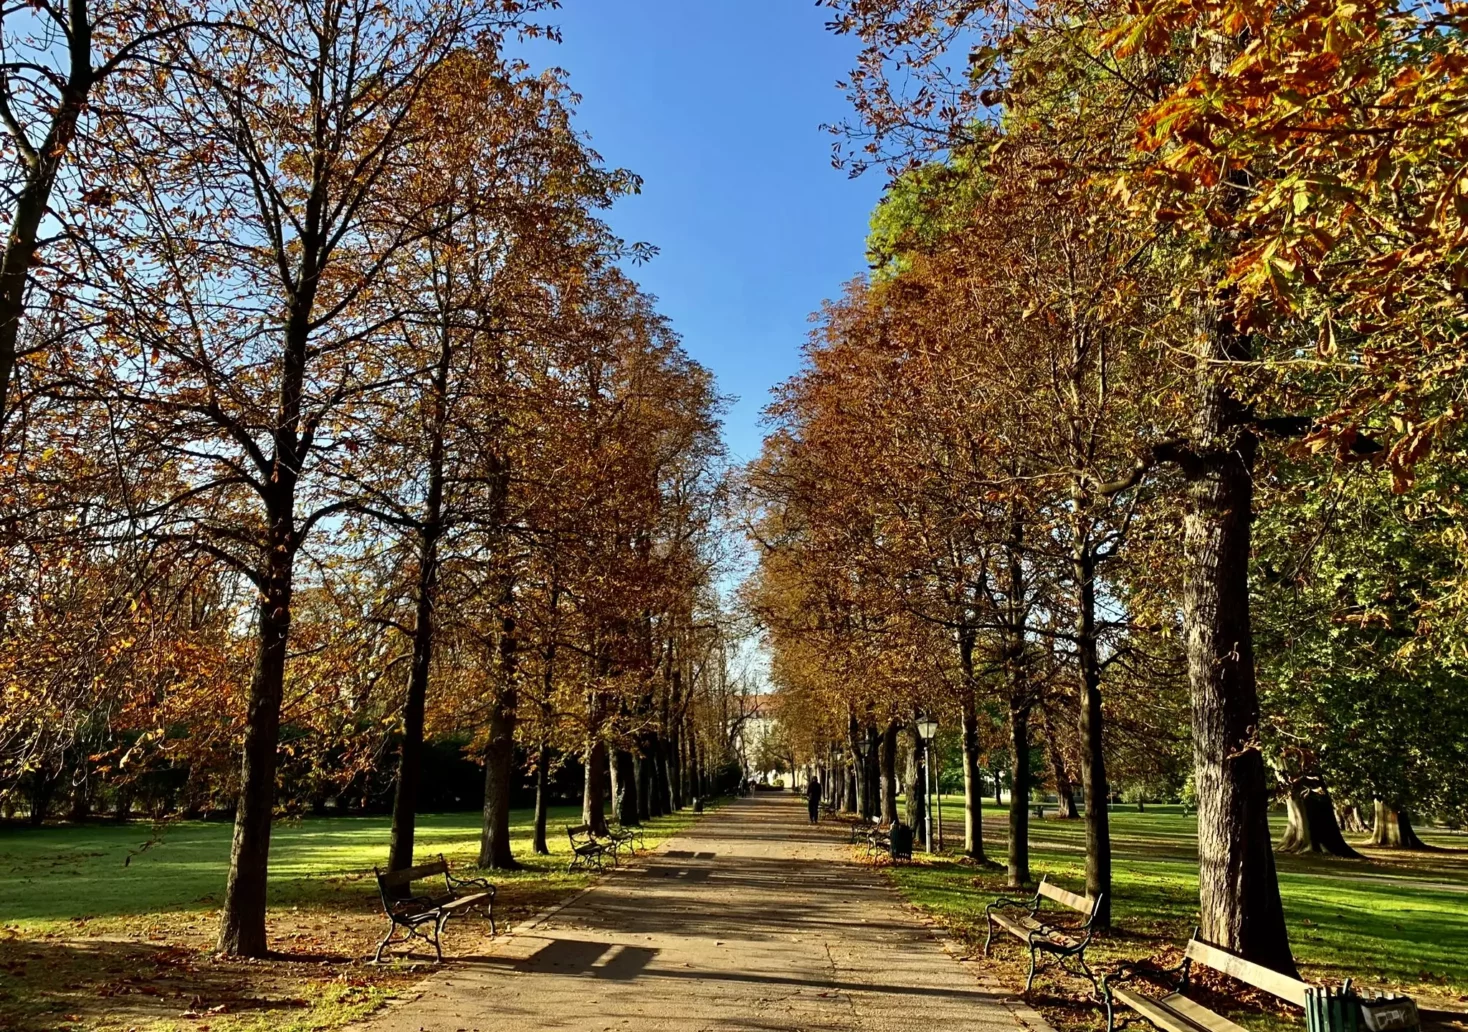 Bild auf 5min.at zeigt die Herbstpracht im Grazer Stadtpark. Zu sehen ist eine Allee.